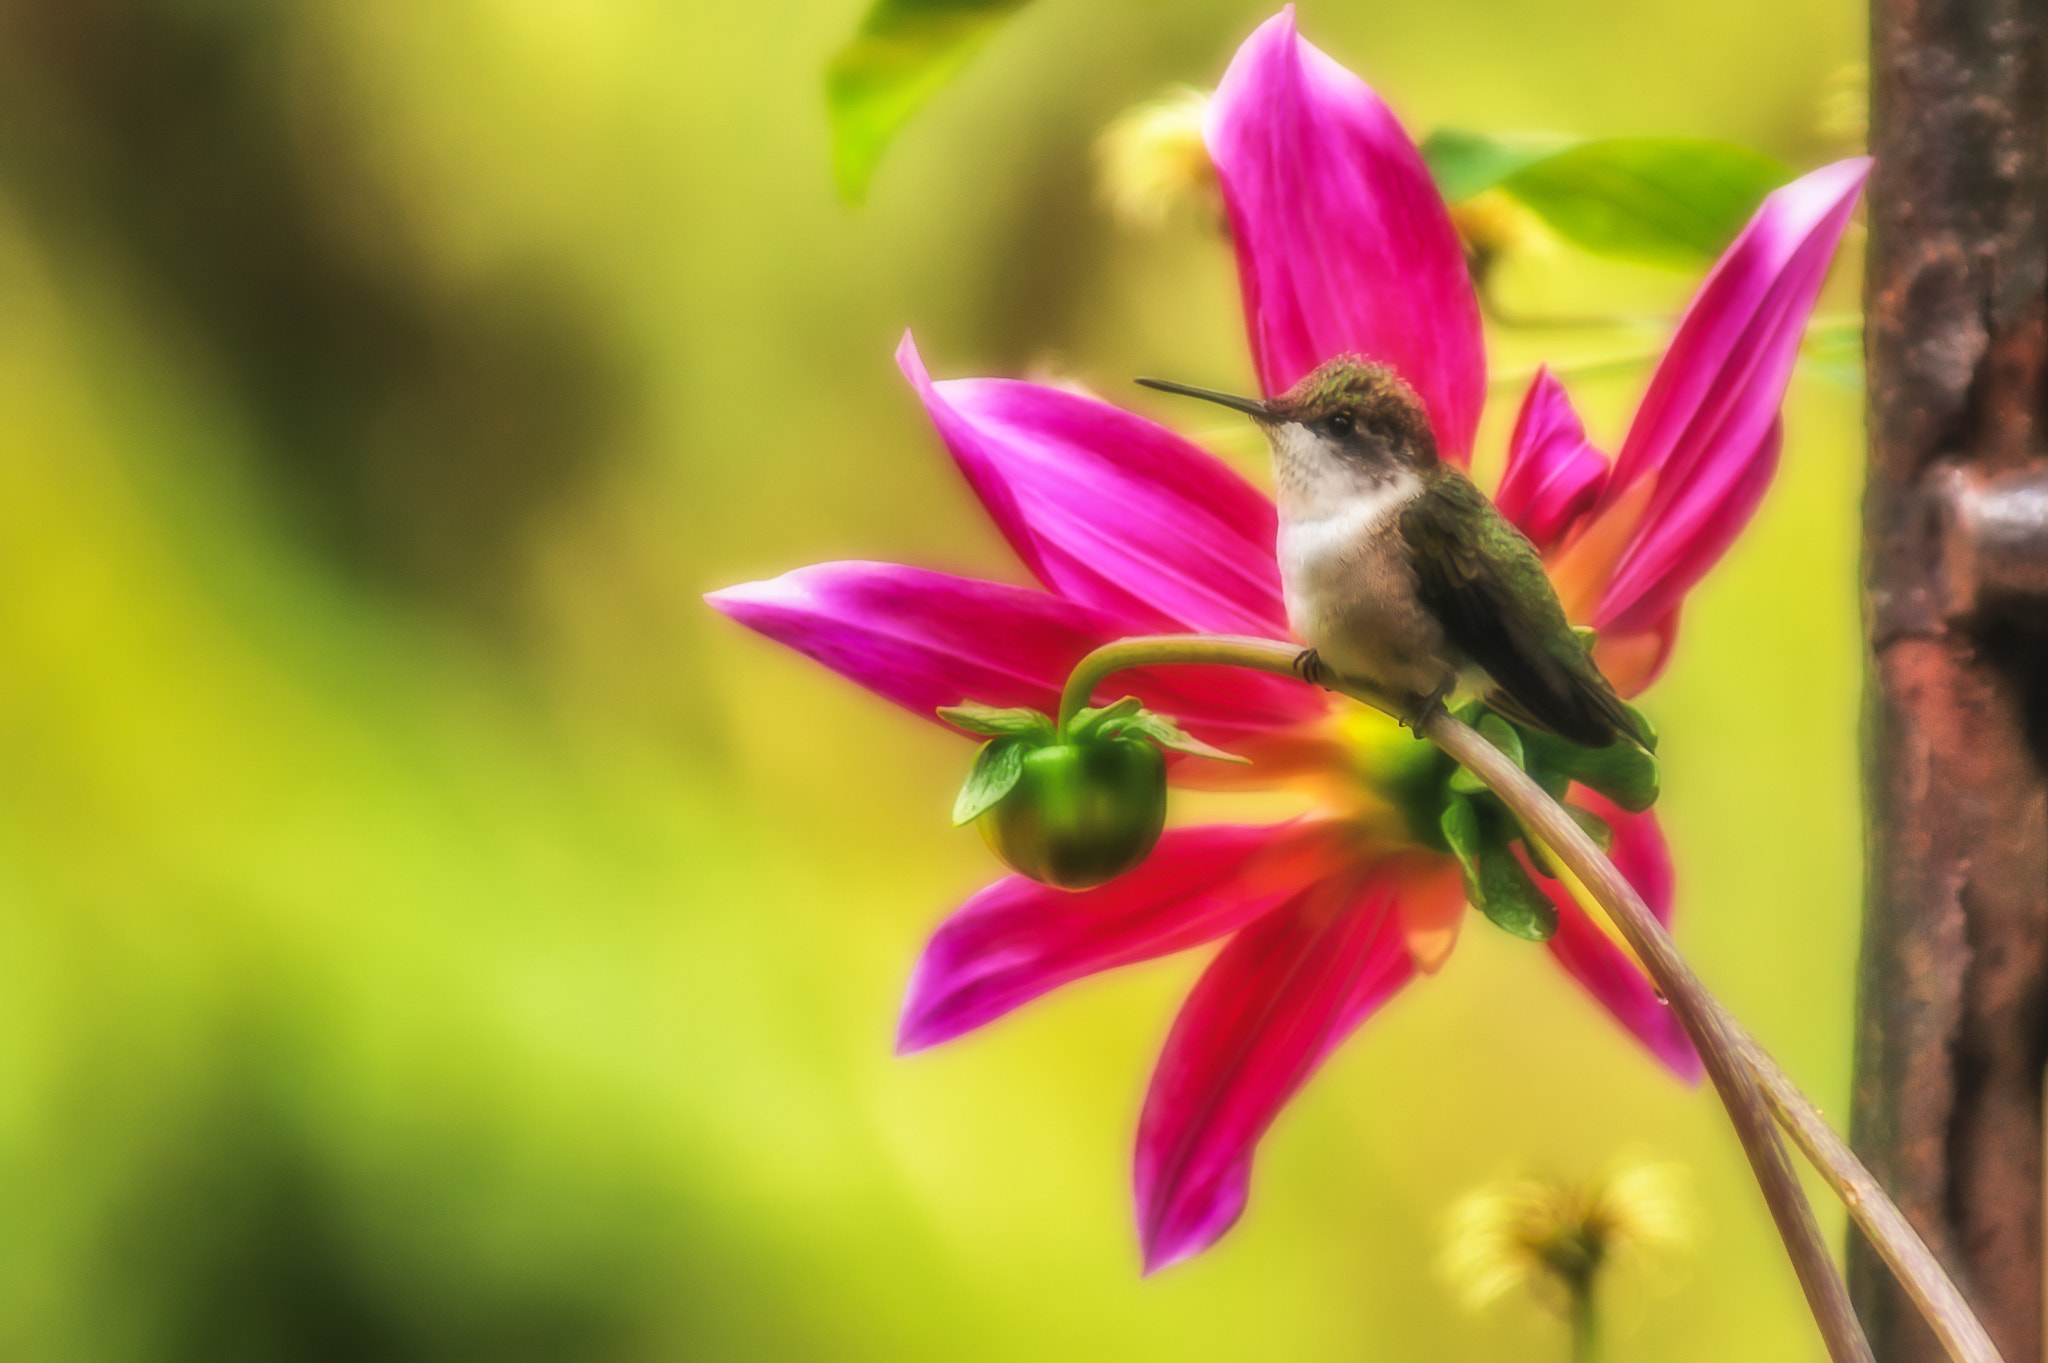 Sony Alpha DSLR-A350 sample photo. Female ruby-throated hummingbird on dahlia, mn photography